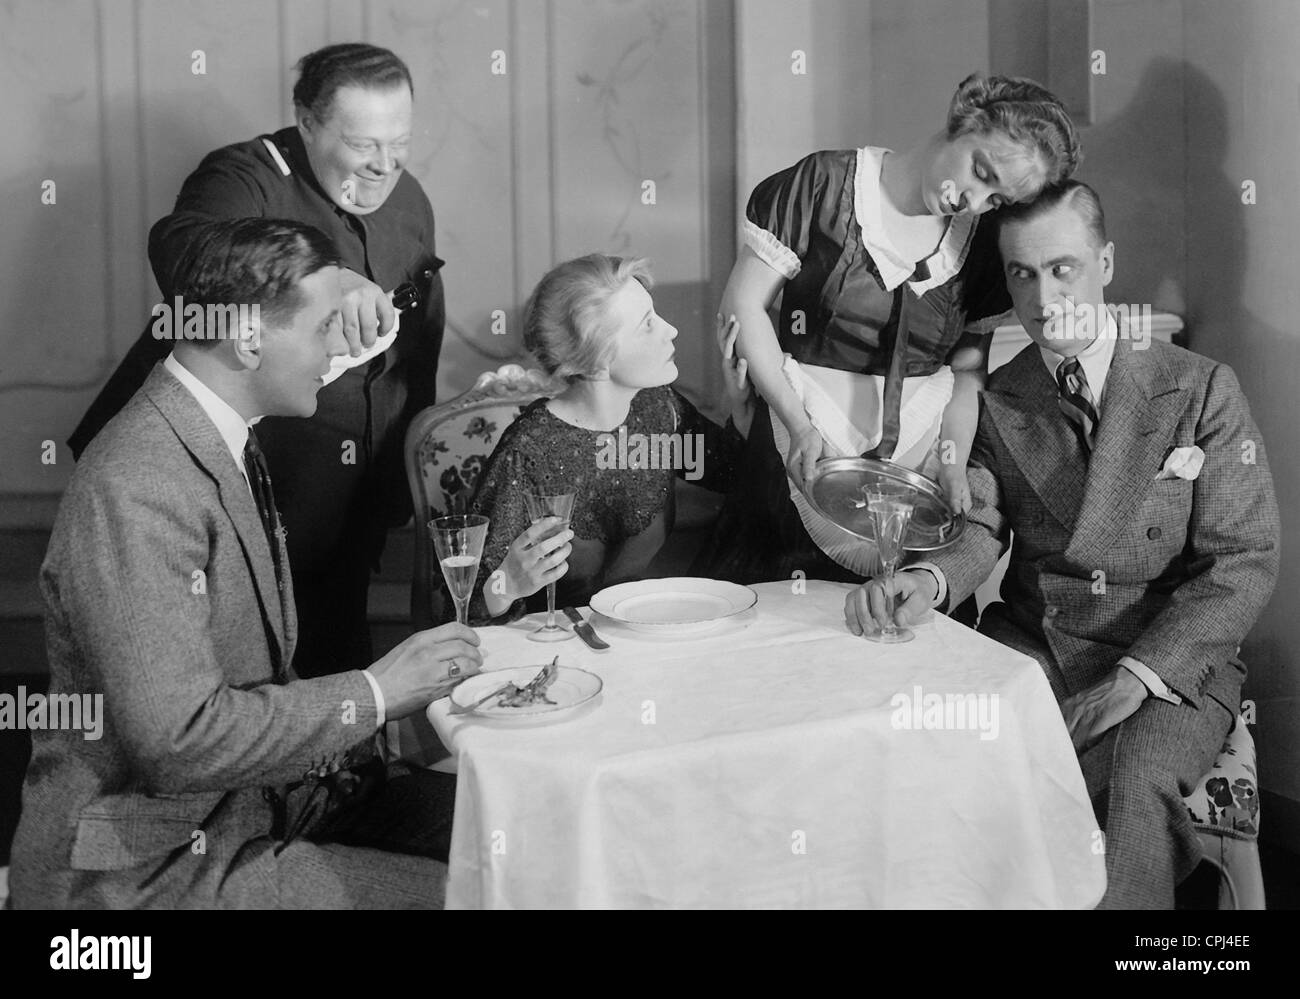 Ulrich Bettac, Ernst Senesch, Erika von Thellmann, Kaethe Haack and Karl Ludwig Diehl, 1929 Stock Photo